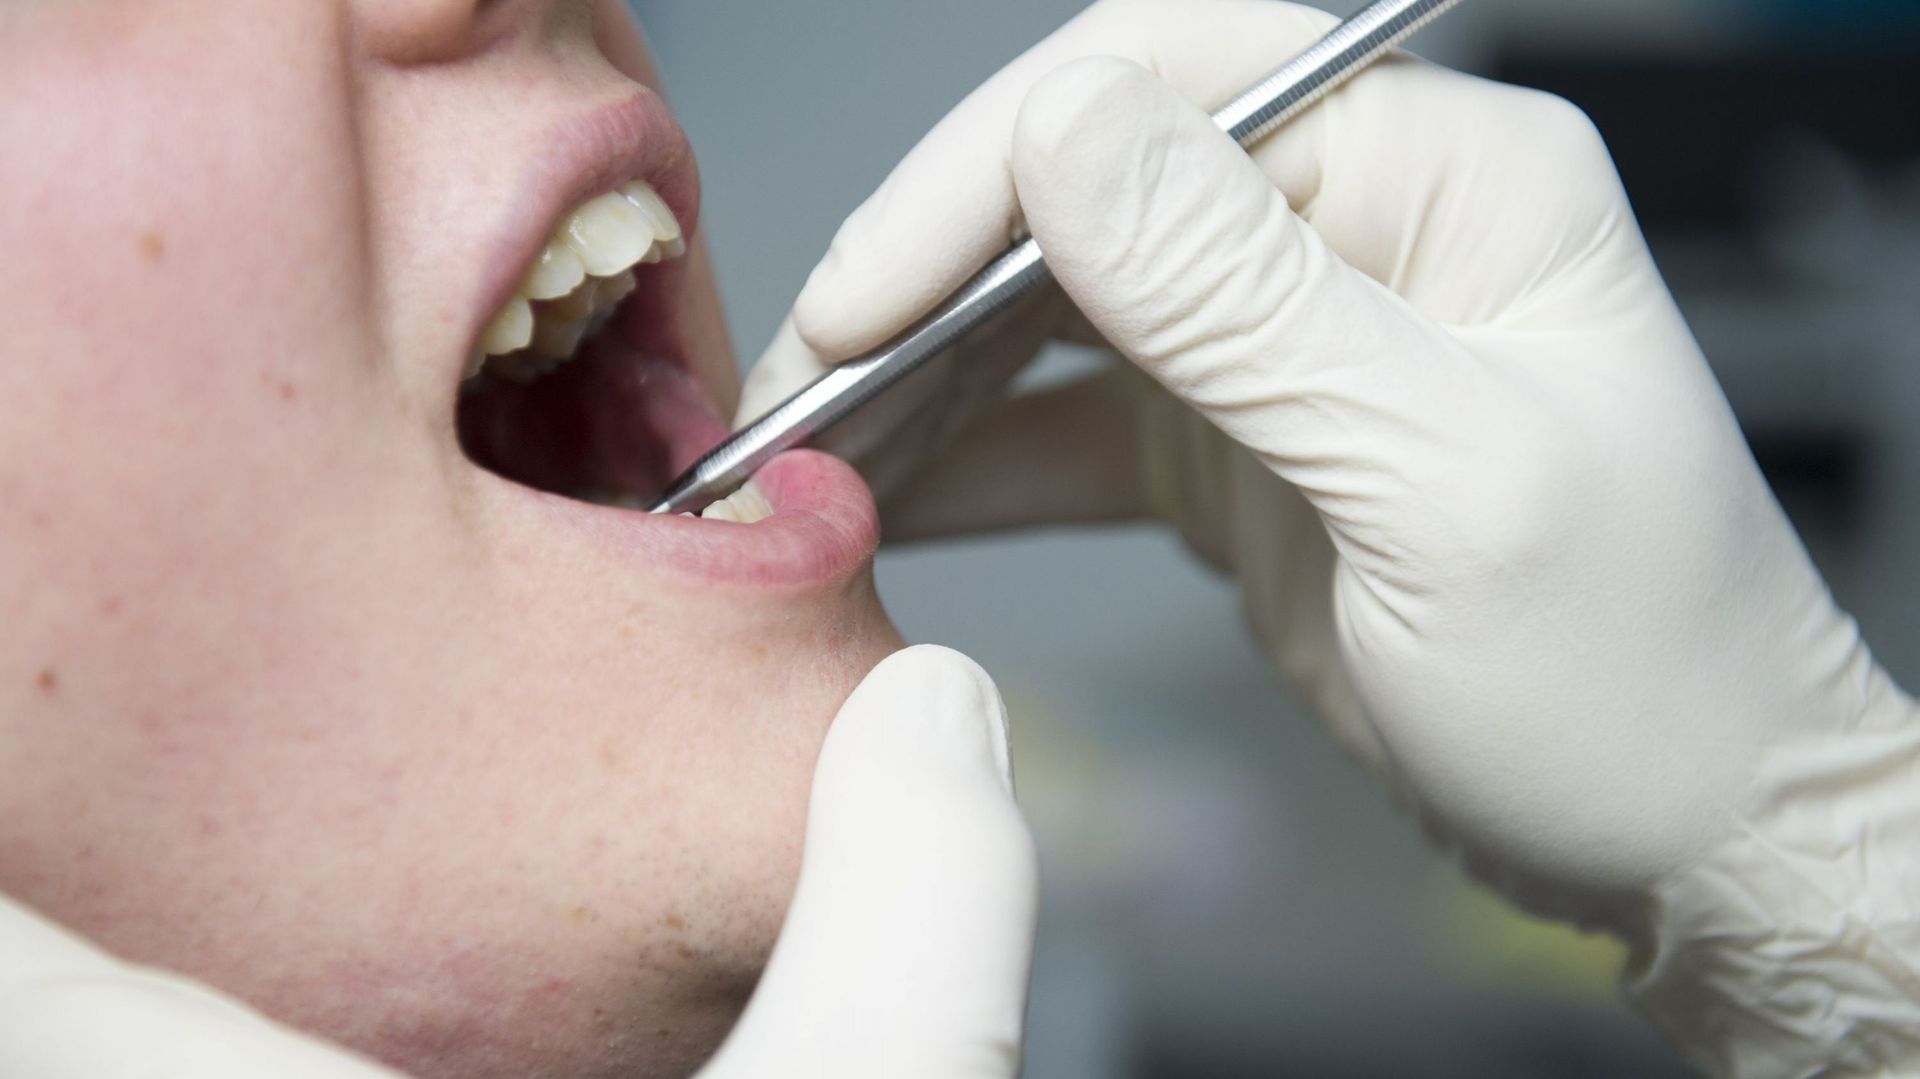 La profession d'hygiéniste bucco-dentaire désormais reconnue en Belgique